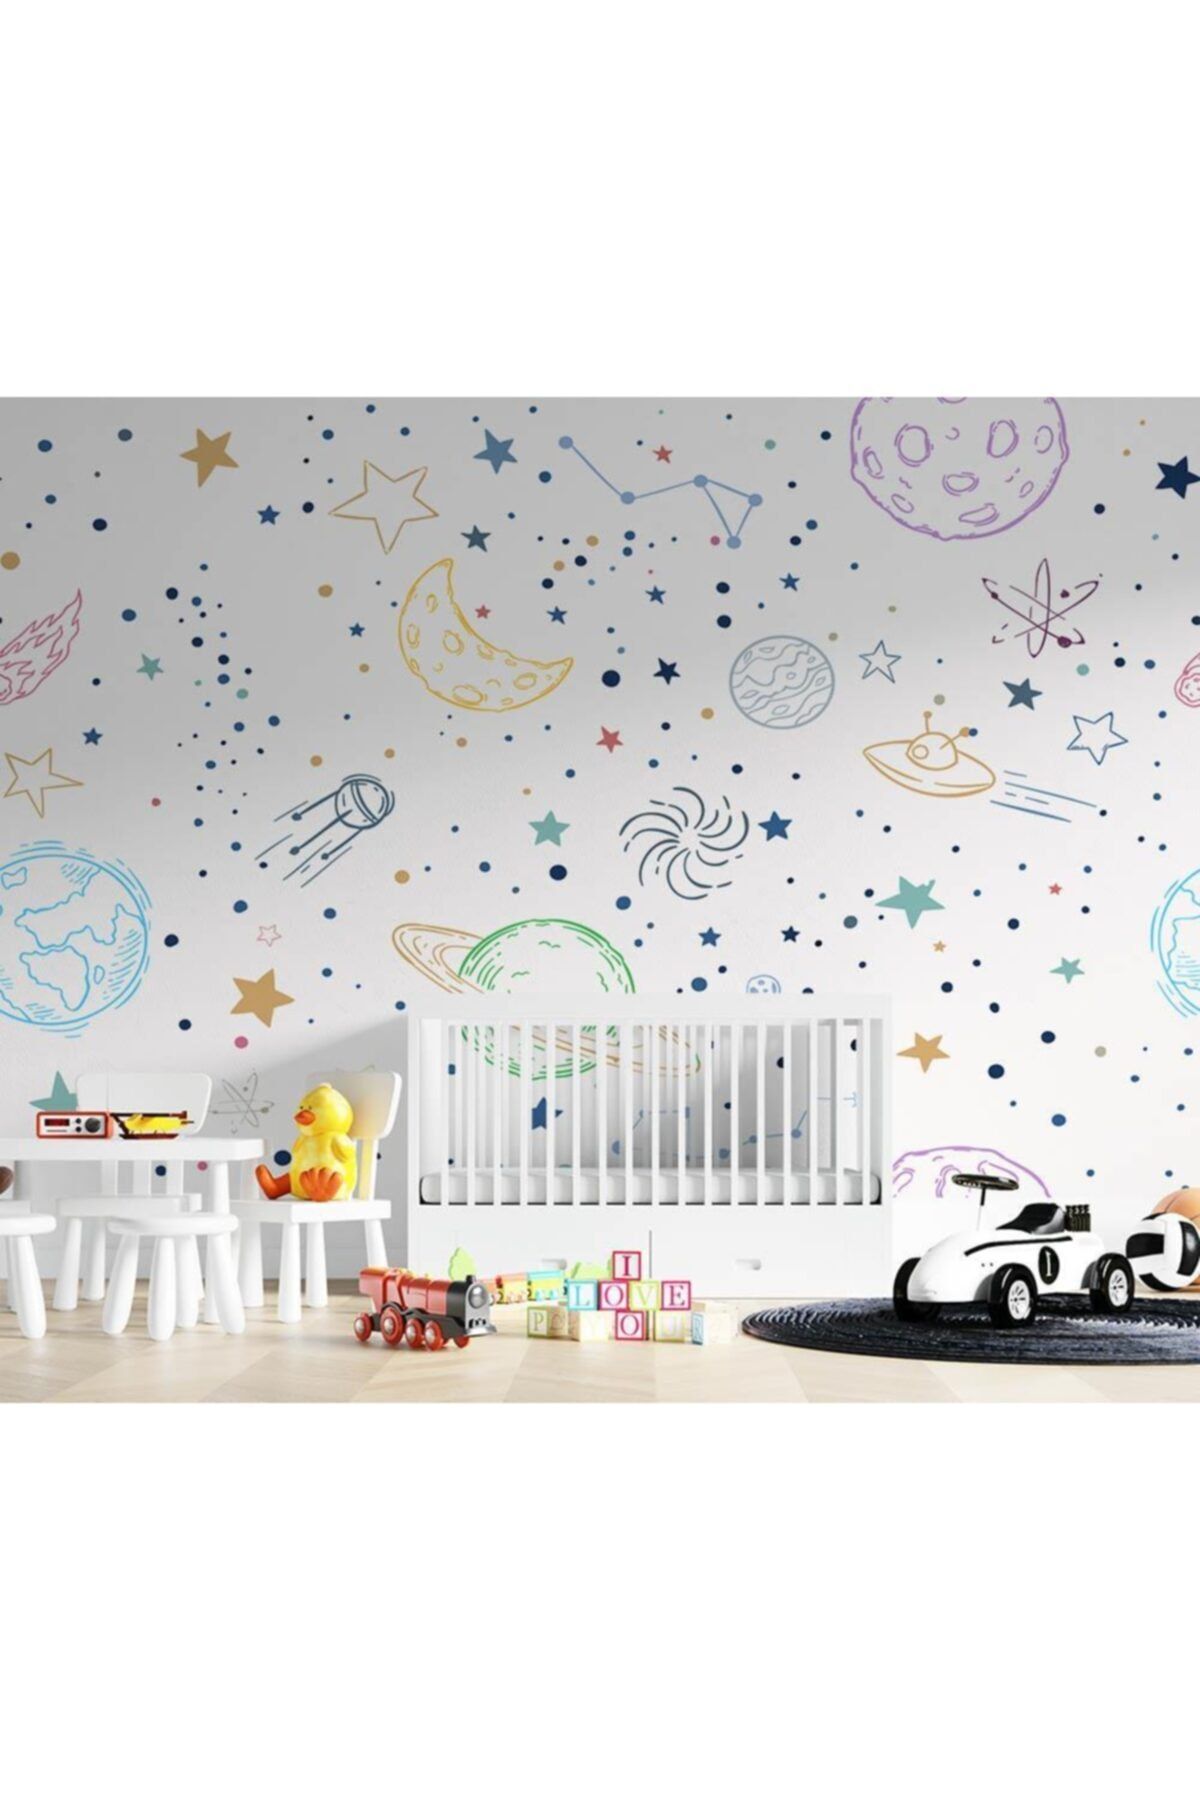 Özen Duvar Kağıtları Renkli Gezegenler Uzay Temalı Çocuk Odası Duvar Kağıdı